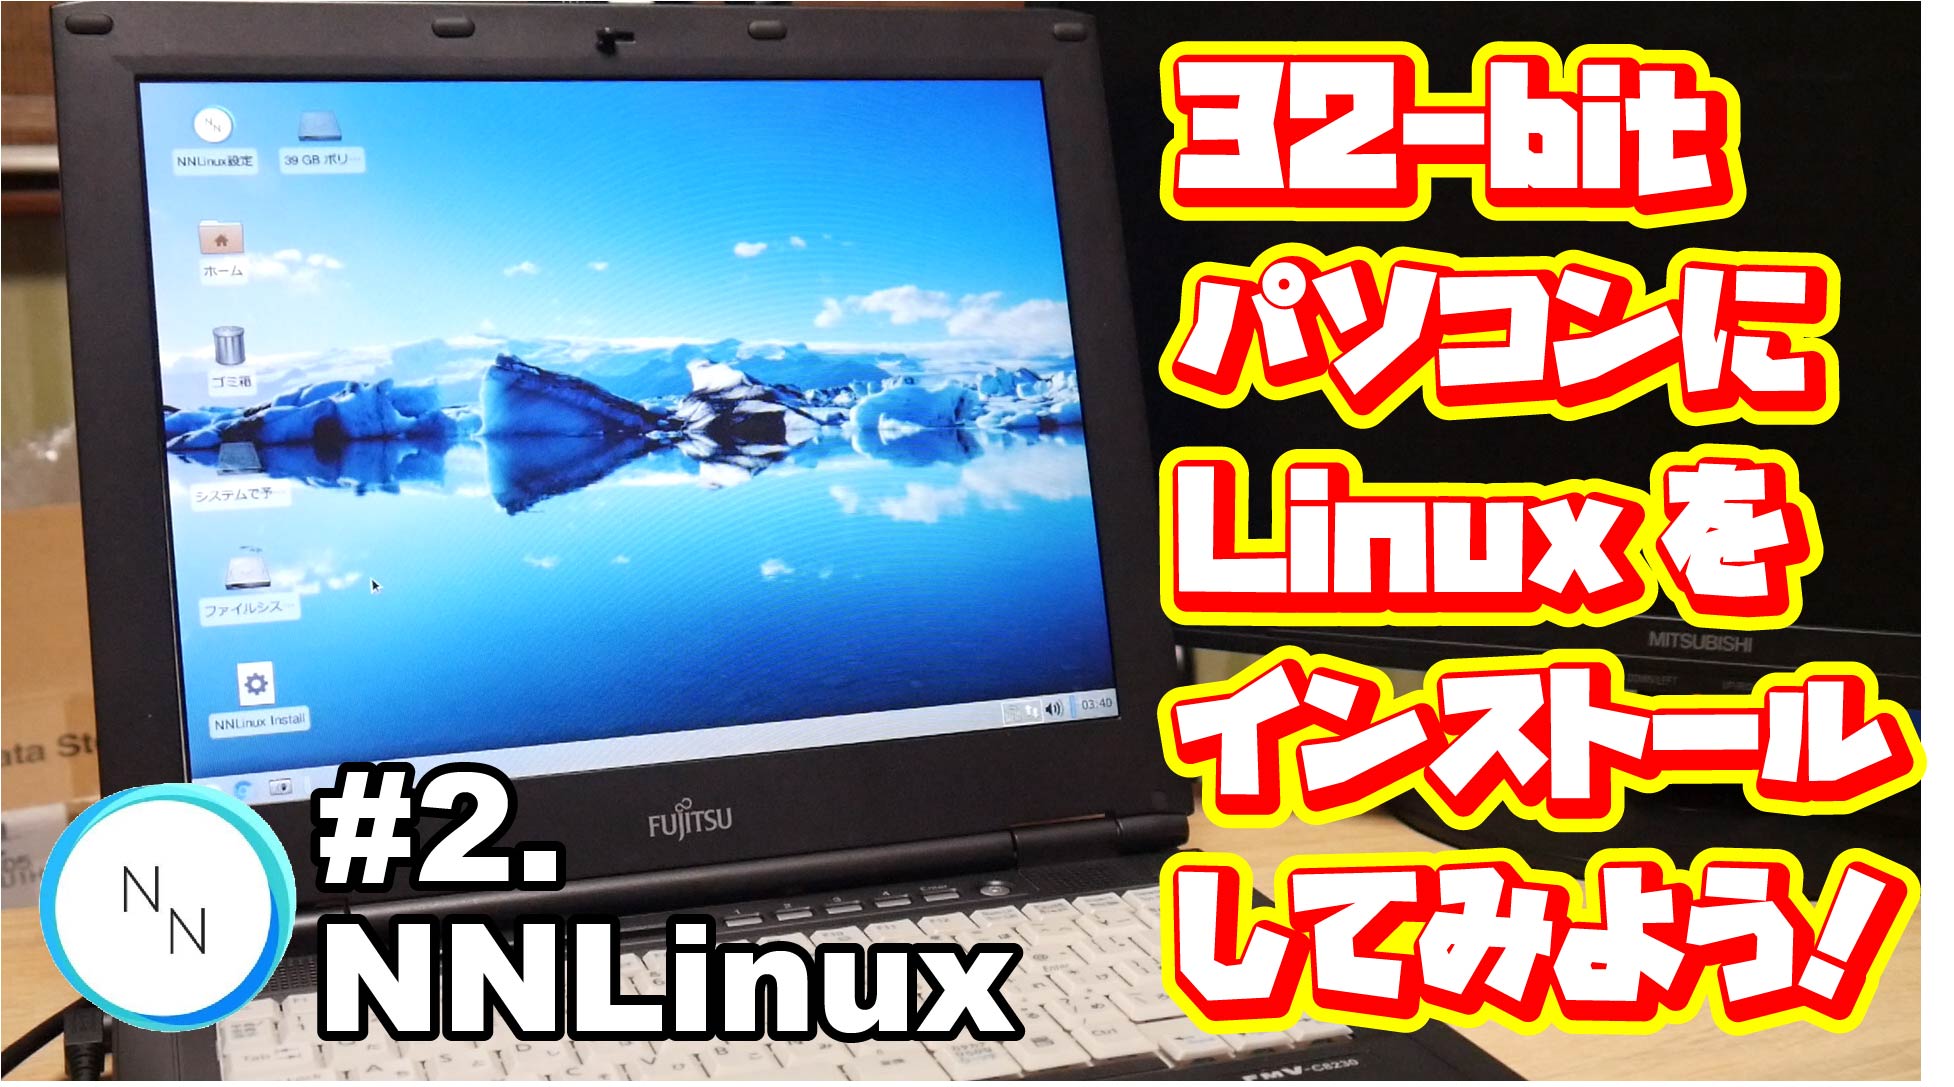 32bitパソコンにLinuxをインストールしてみよう！#2.NNLinux